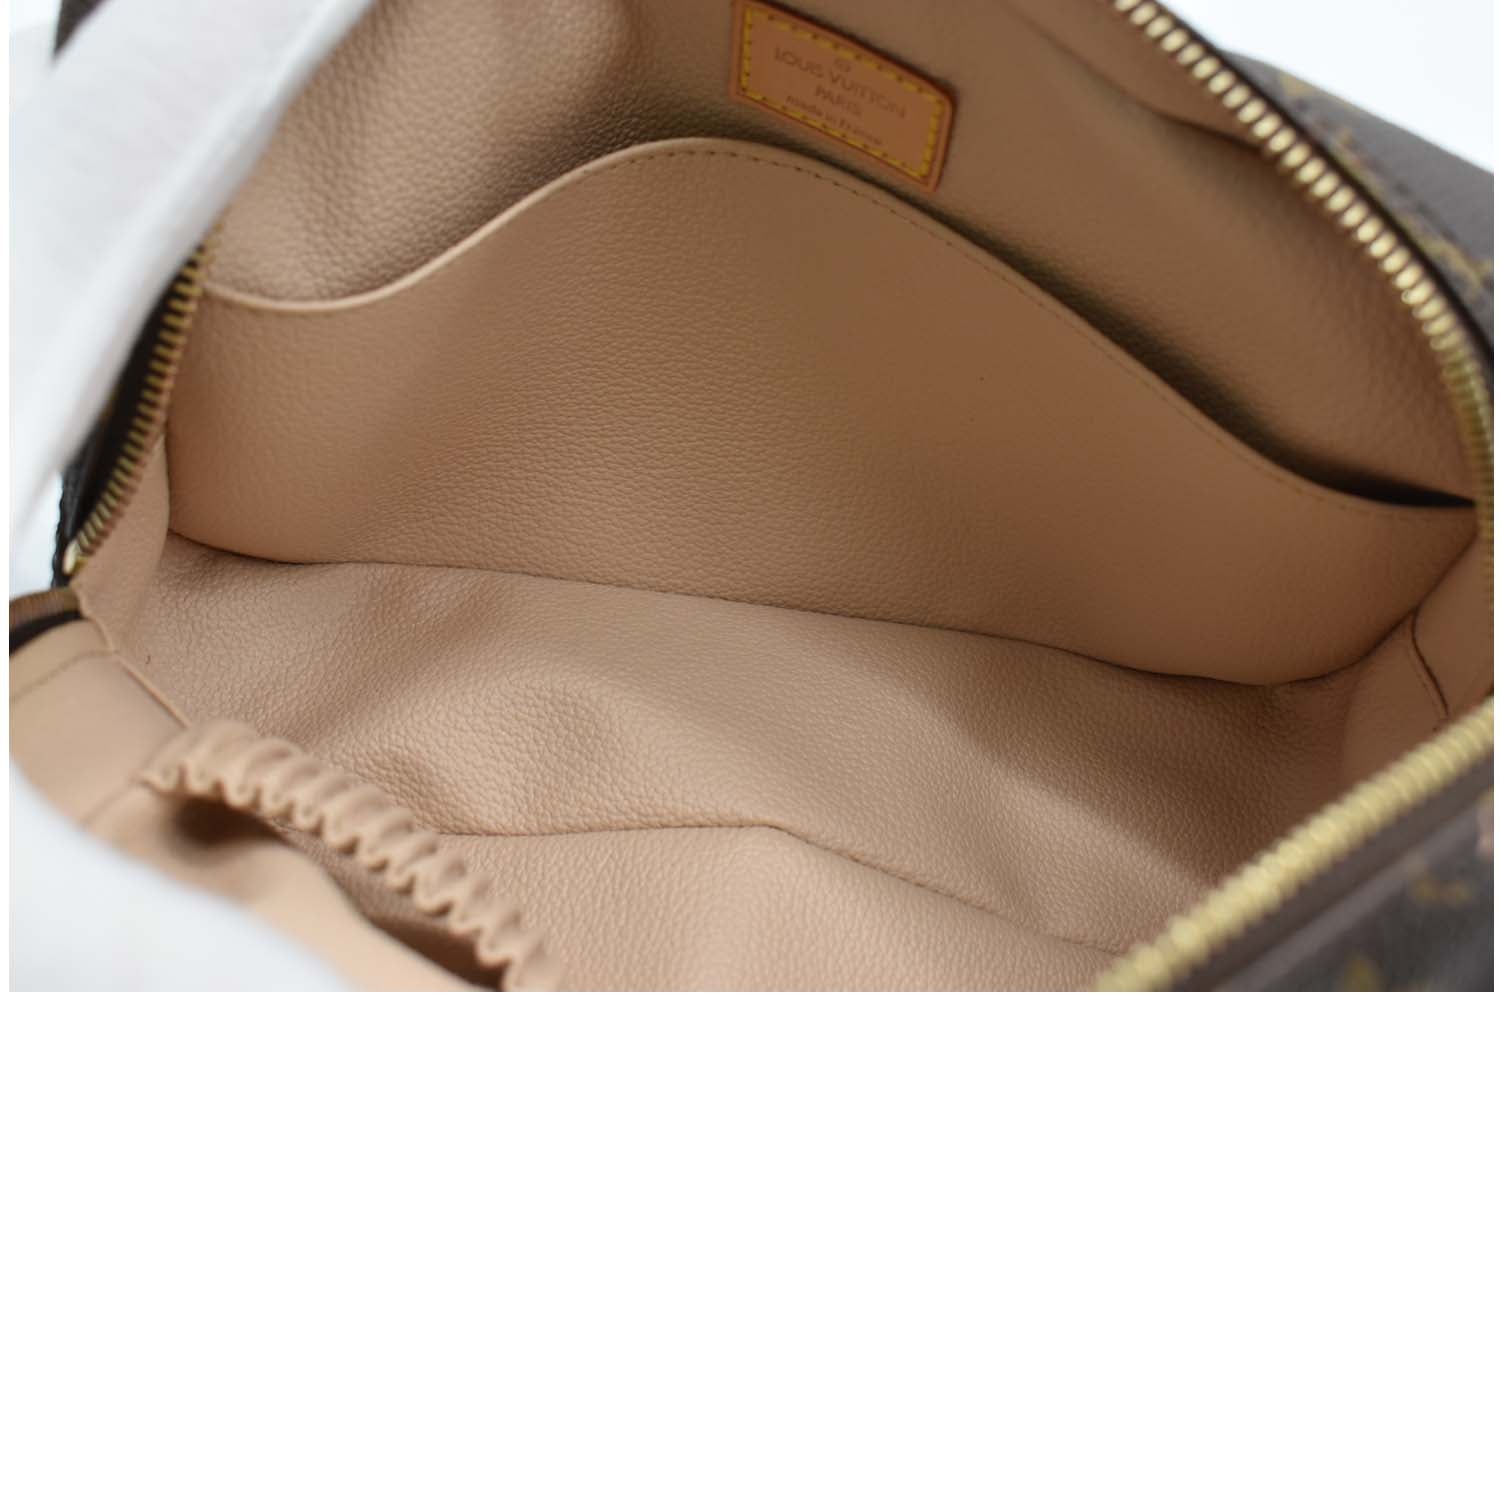 Trousse de toilette leather vanity case Louis Vuitton Brown in Leather -  36913688